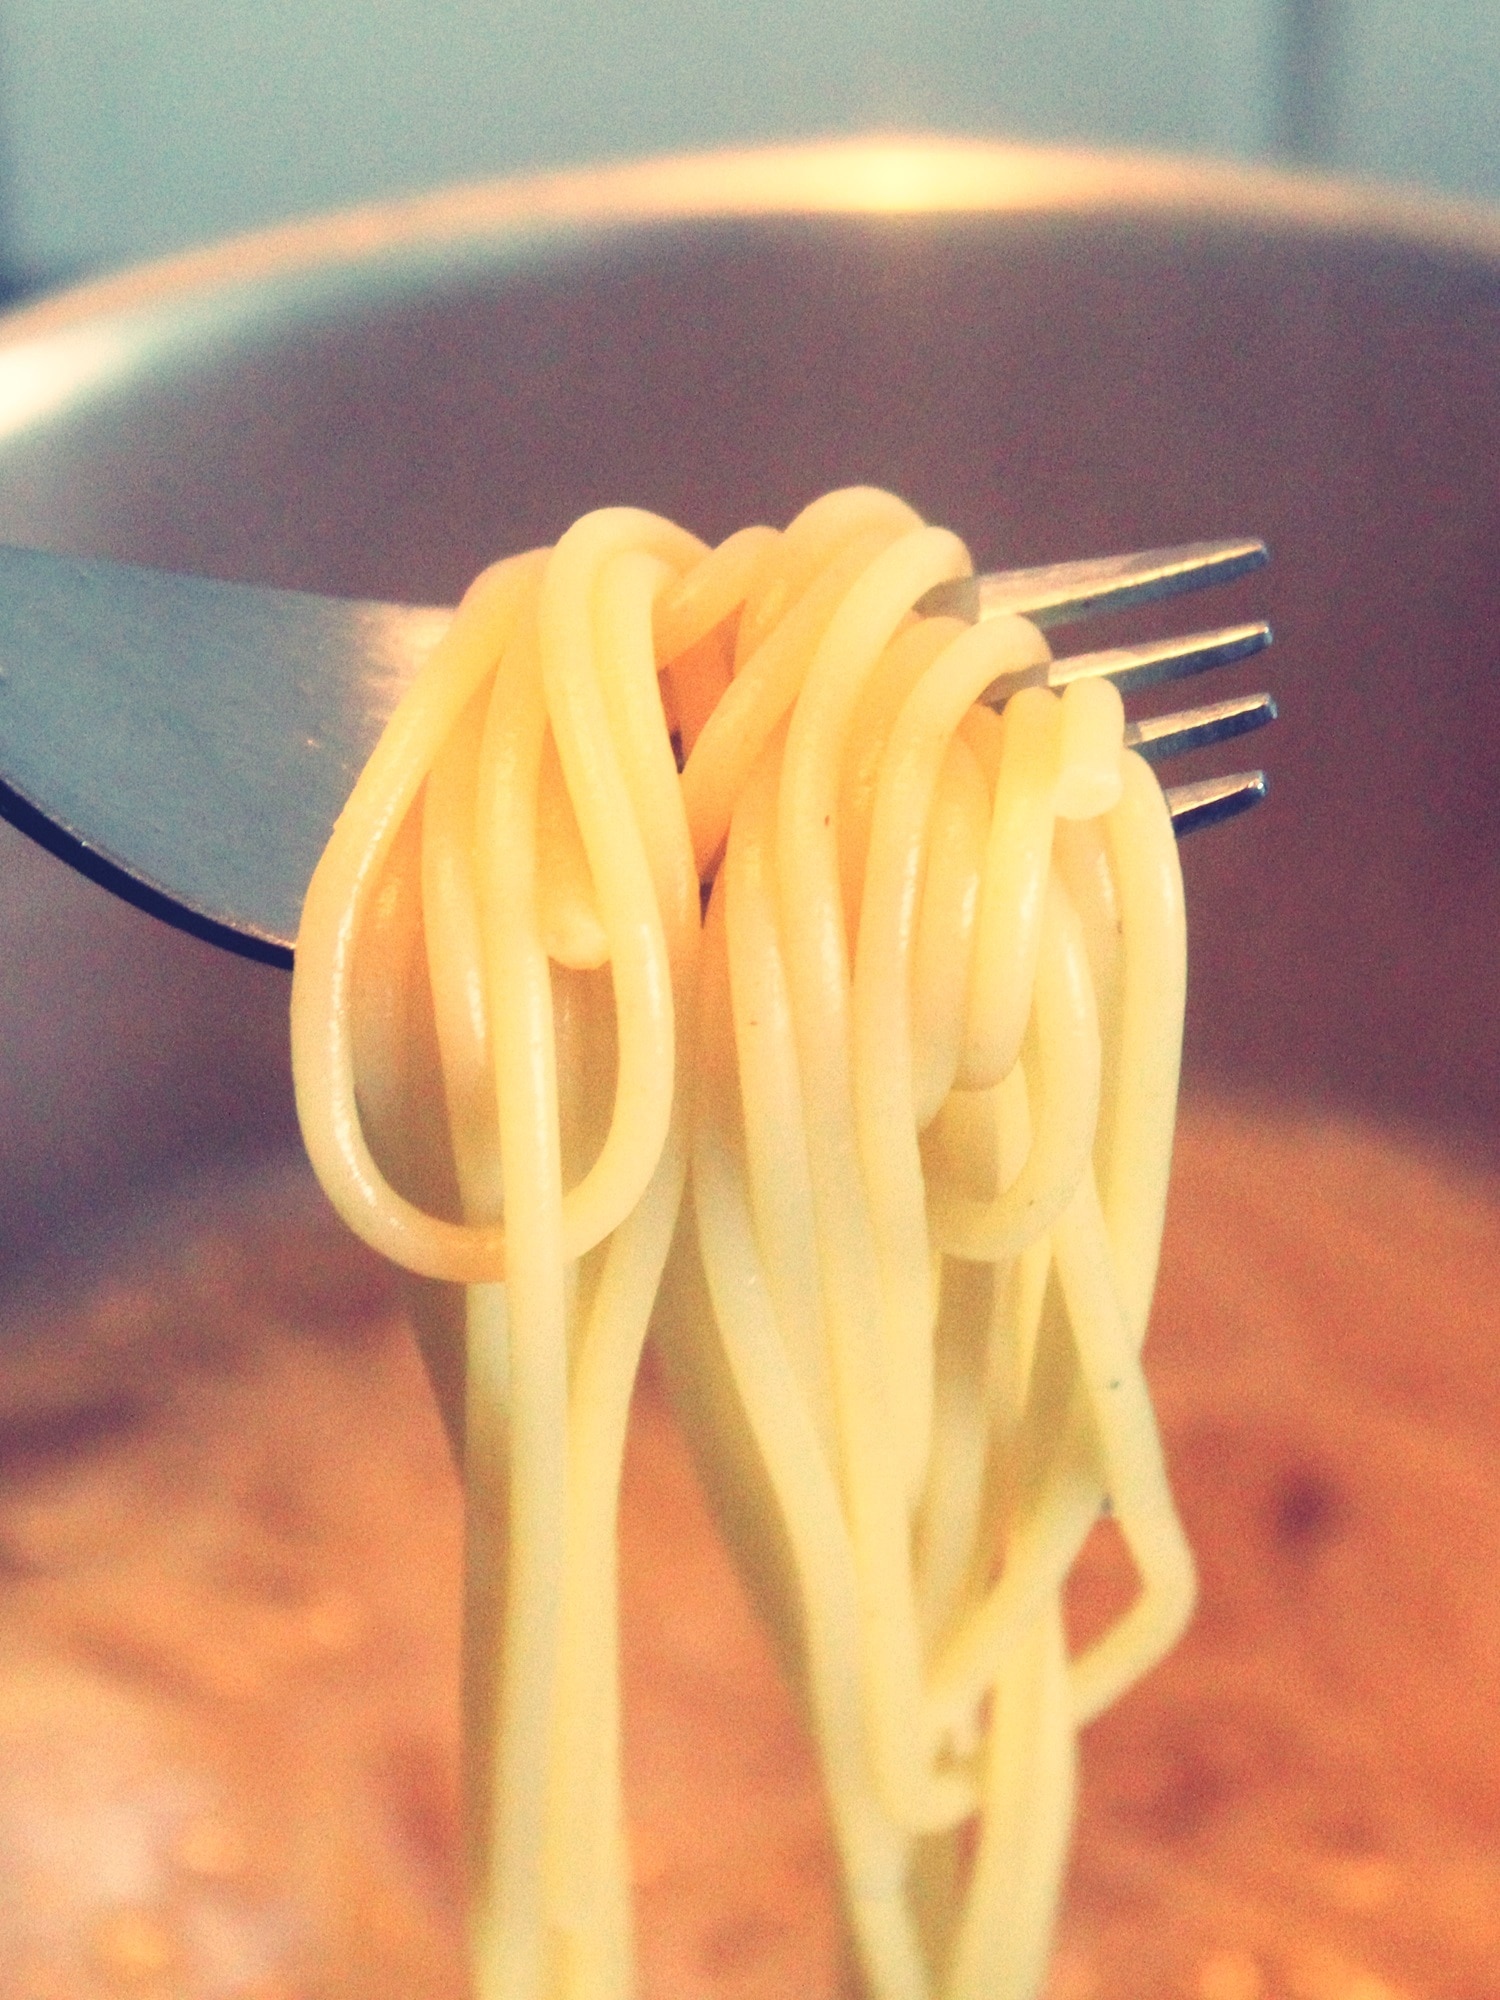 noodles on fork